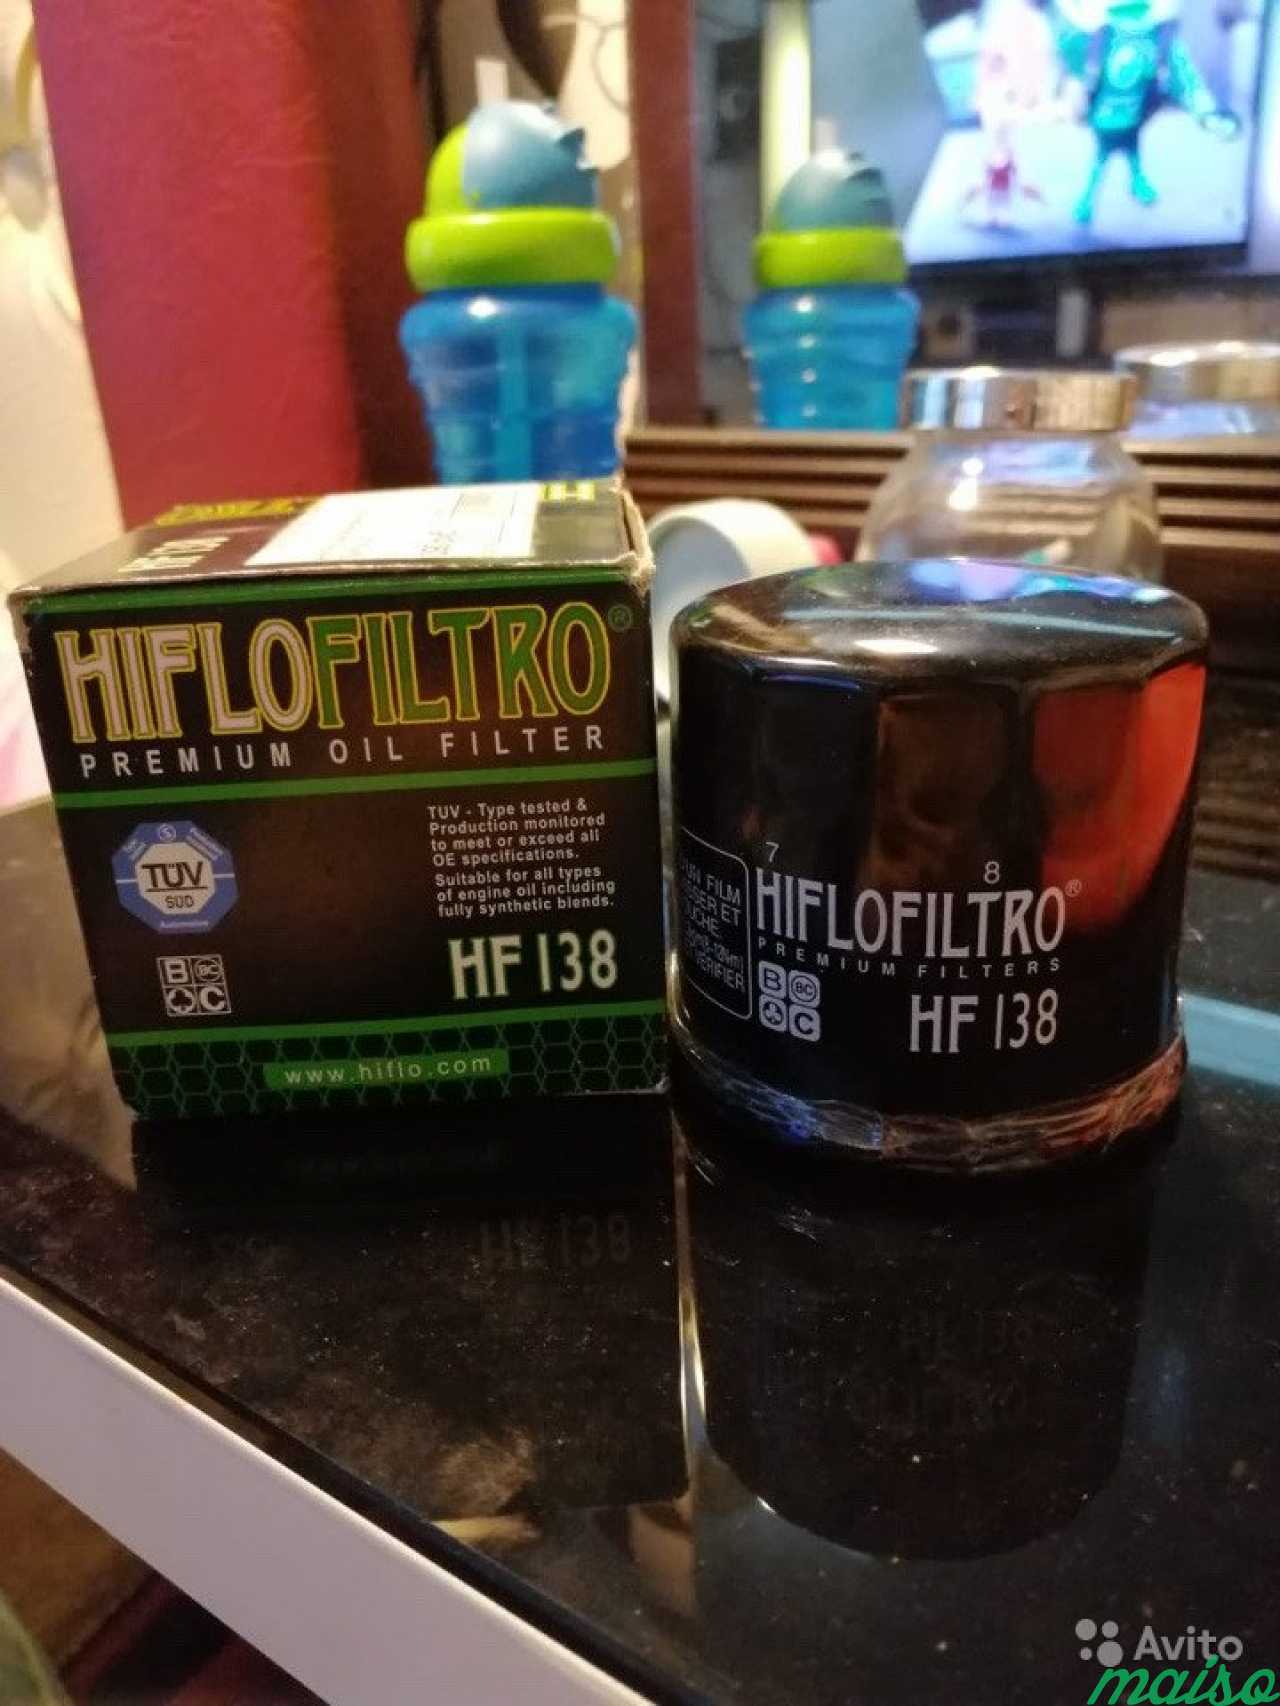 Hiflo Filtro масляный фильтр HF 138 Тайланд в Санкт-Петербурге. Фото 1